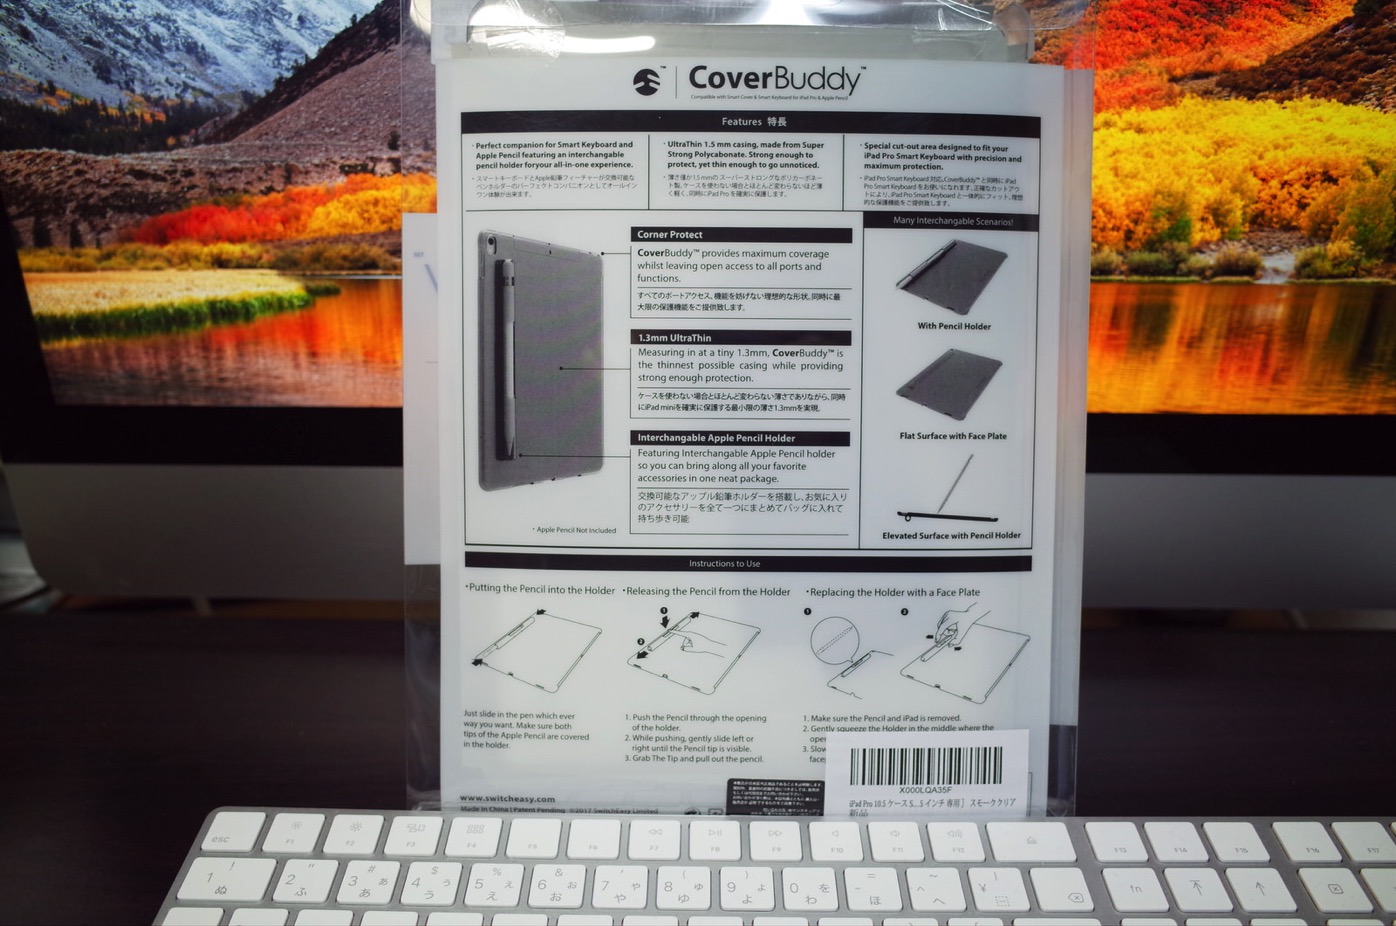 iPad Pro 10.5 ケース SwitchEasy CoverBuddy ハード バック カバー Apple Pencil 収納付き 純正 スマートキーボード 対応-3